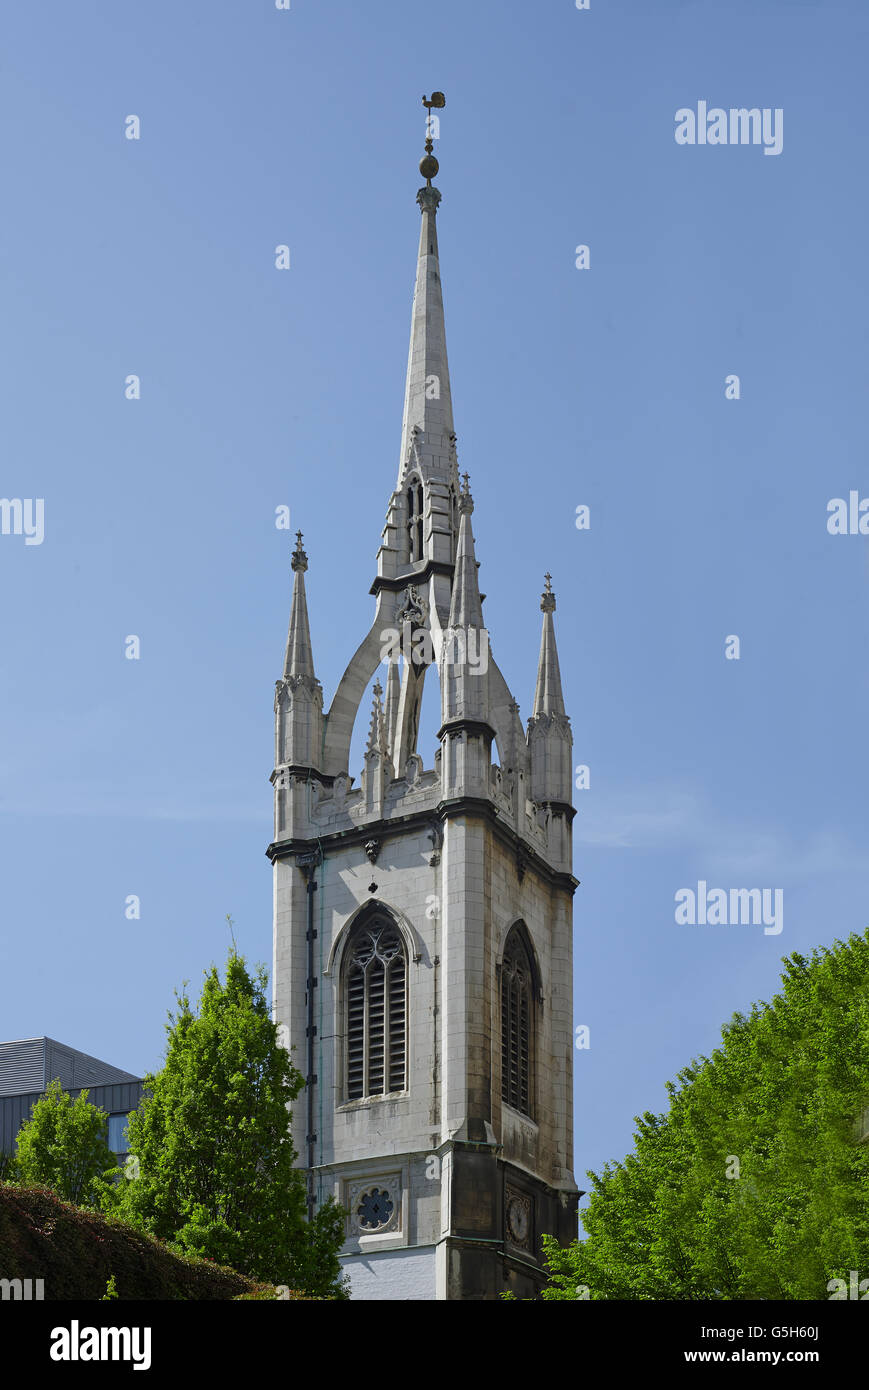 St Dunstan in Oriente, chiesa della città di Londra. La guglia di ago con archi rampanti. Foto Stock